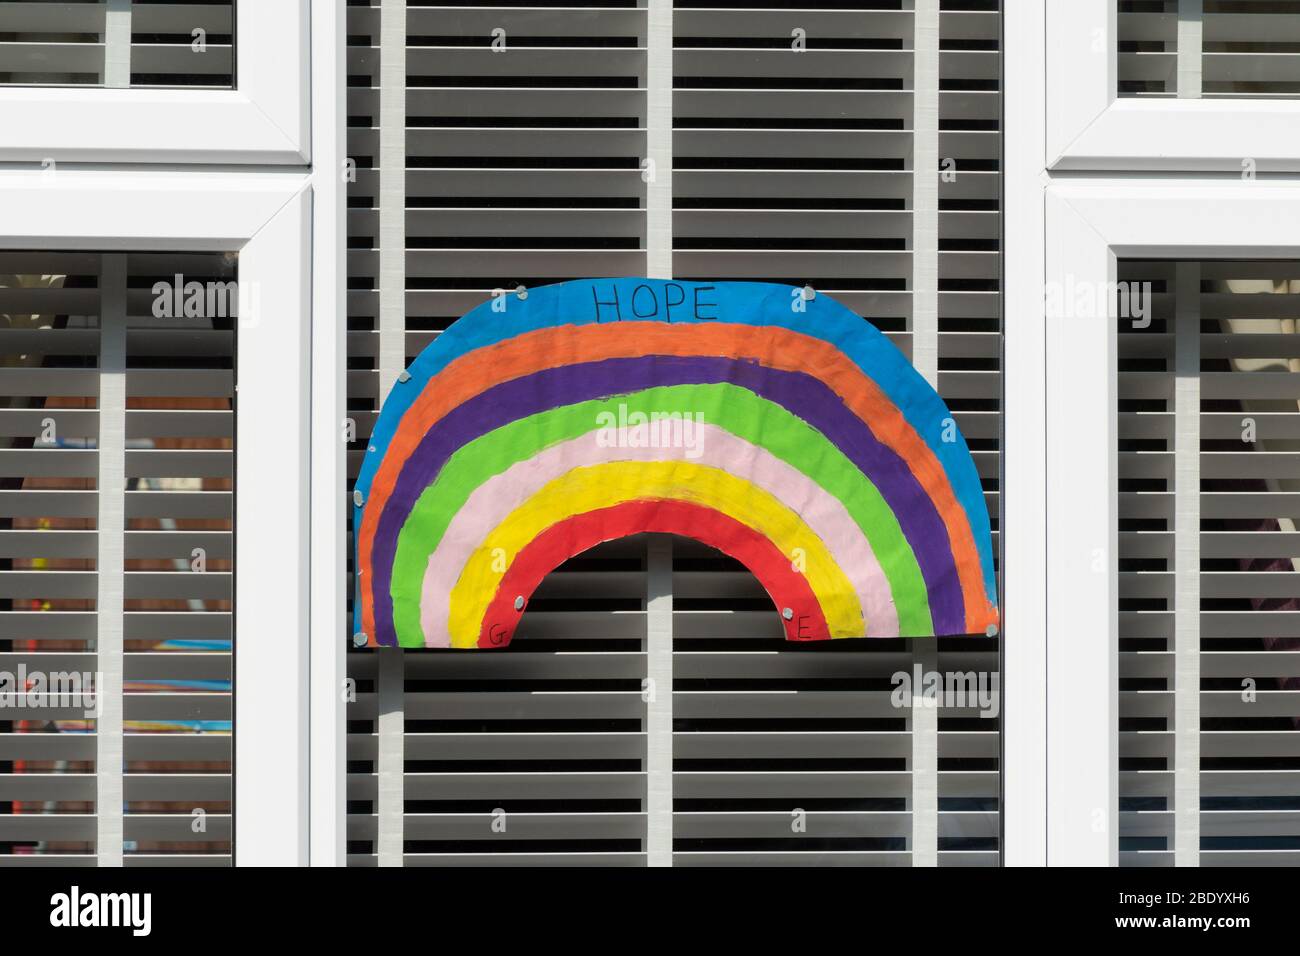 10. April 2020. Während der Pandemie des Coronavirus Covid-19 von 2020 ist der Regenbogen zum Symbol der Unterstützung für Menschen geworden, die Solidarität mit den Beschäftigten des Gesundheitsdienstes an der Front zeigen wollen. Kinder haben Bilder mit dem Regenbogen gemalt und sie in ihre Fenster geklebt, um den Mitarbeitern des NHS und anderen Schlüsselarbeitern zu danken. Stockfoto